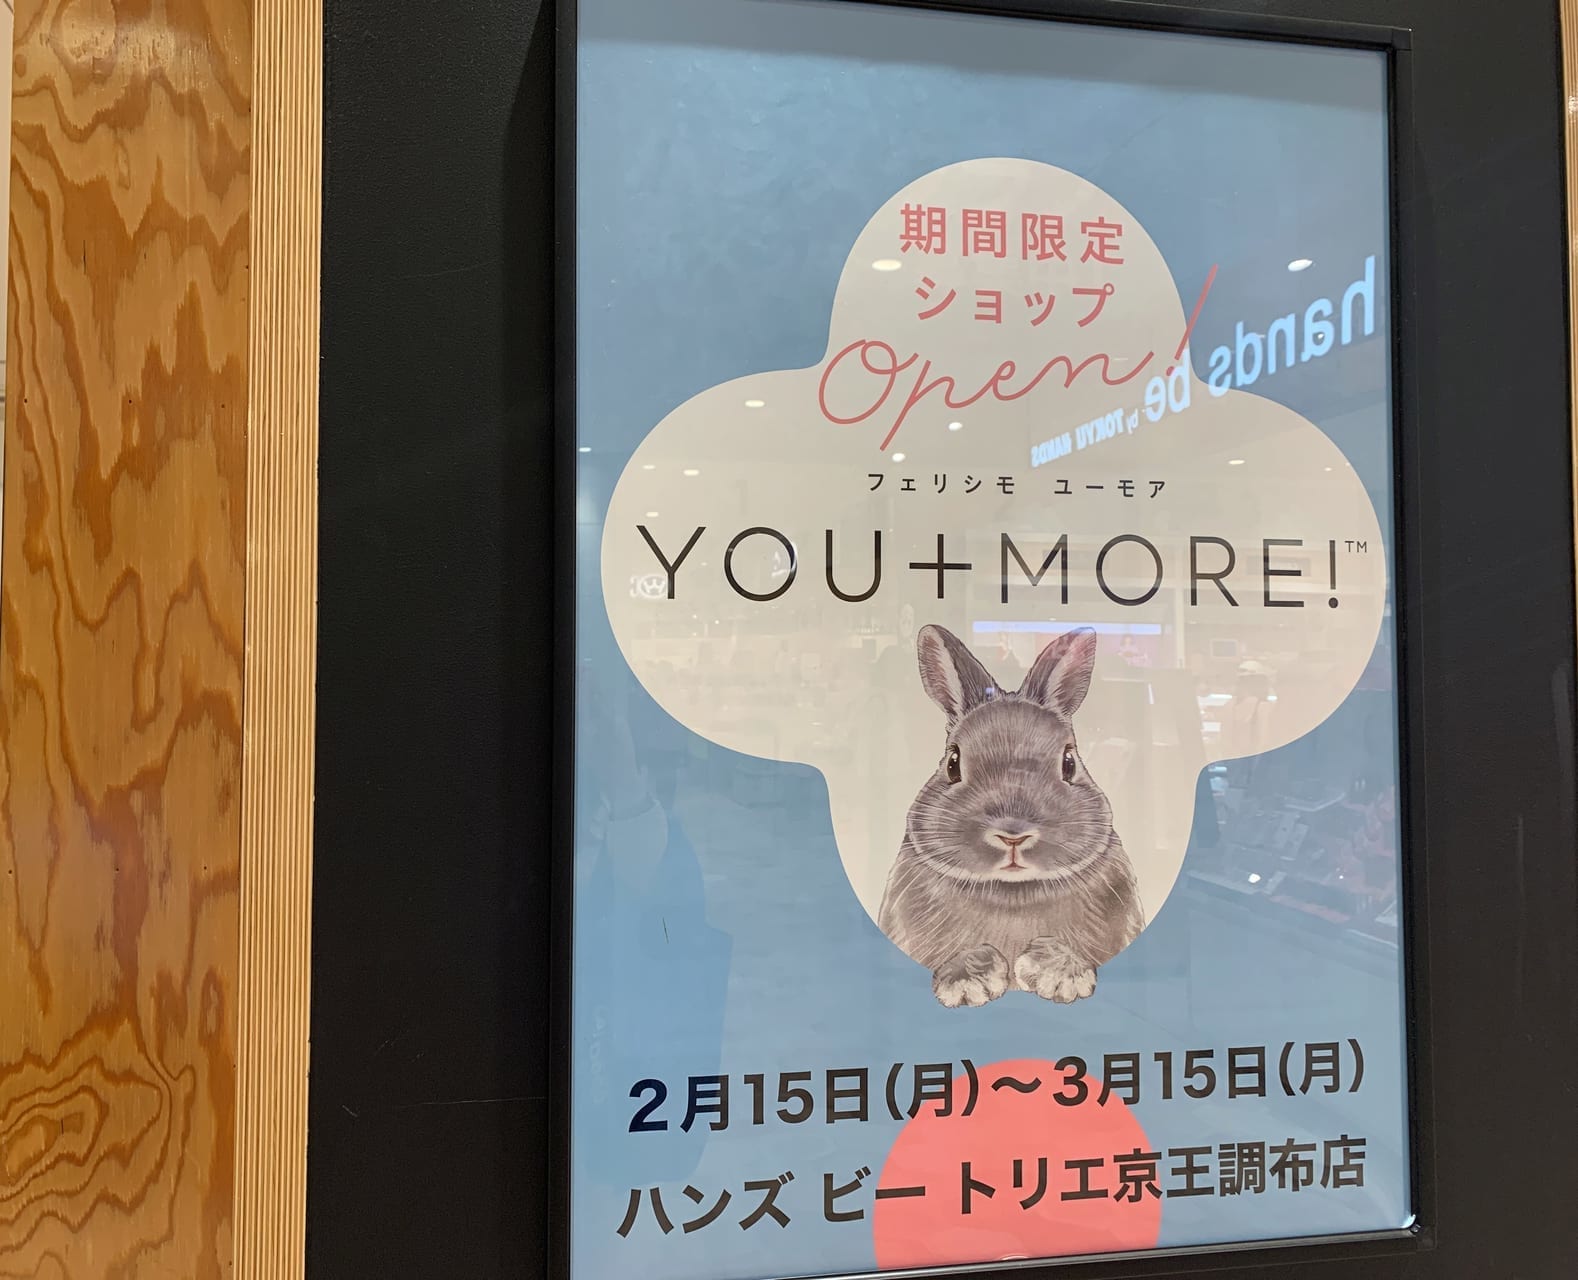 期間限定ショップ「YOU+MORE!」がトリエ京王調布内ハンズビーにて出店中です。